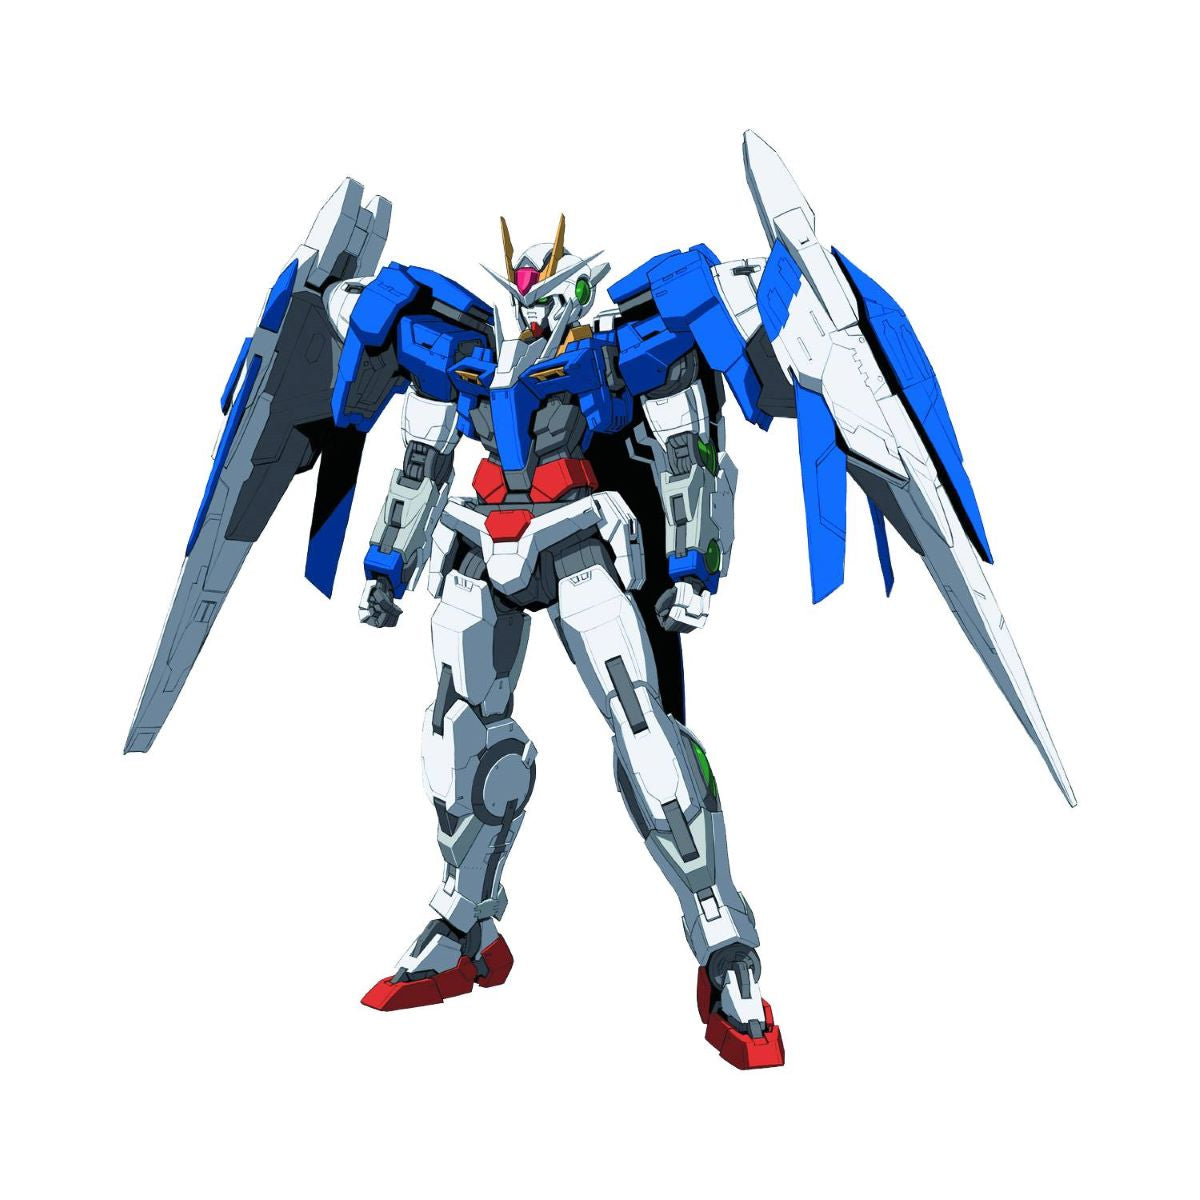 Real Grade Gundam 00 Raiser 1:144 Model Kit